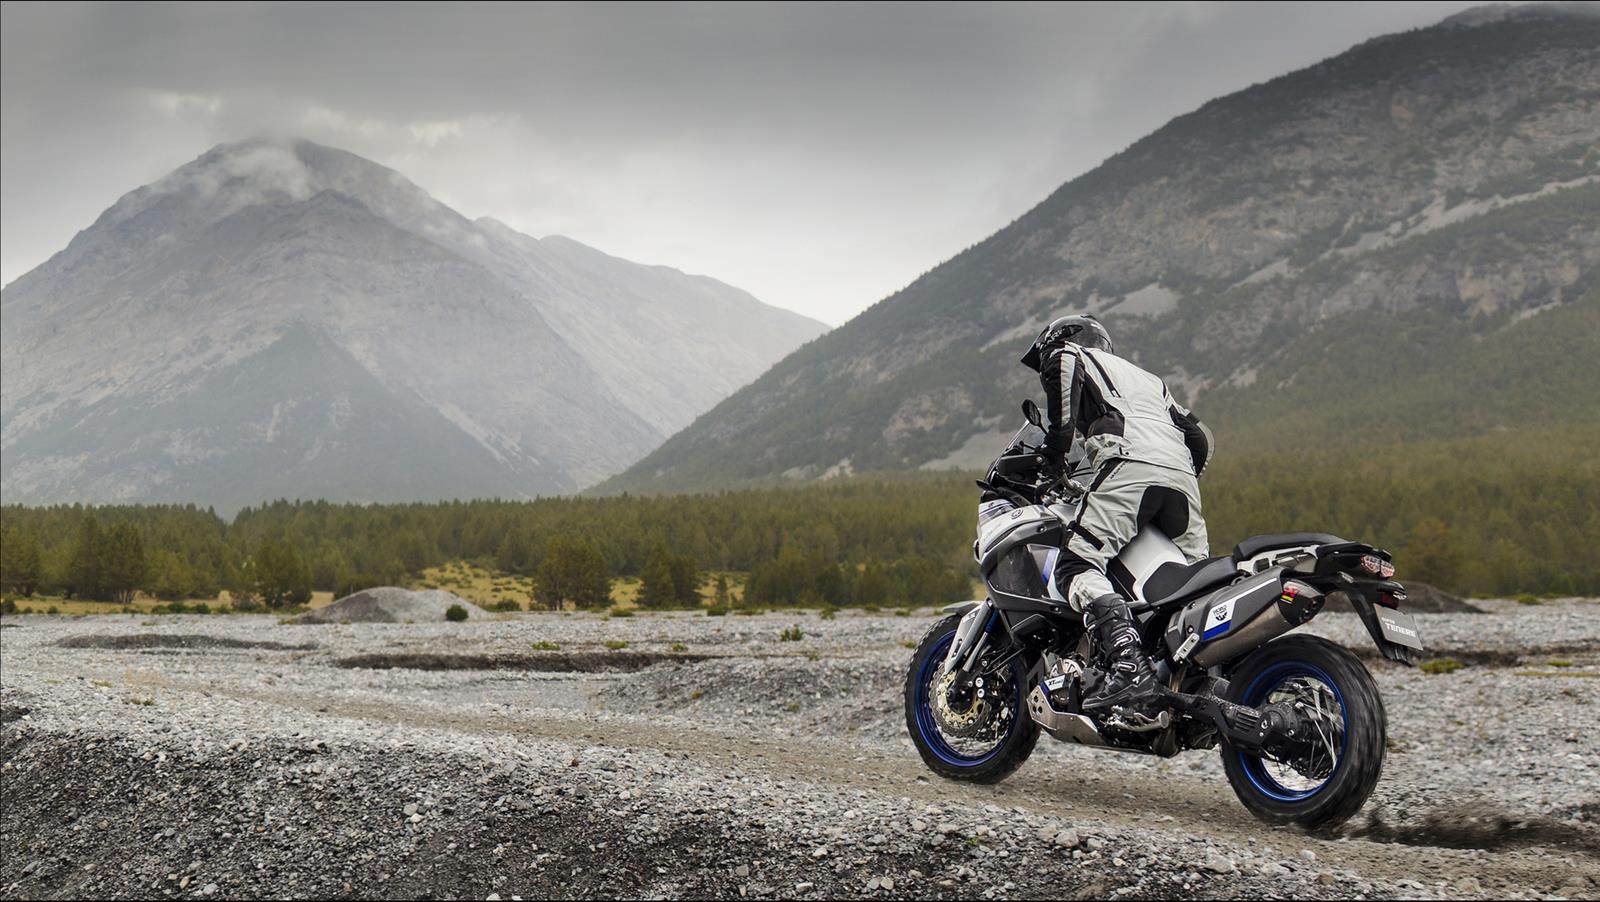 Zrozen pro přežití Představujeme Vám model XT1200Z World Crosser - jeden z nejodolnějších motocyklů na dlouhé cesty, jaký jsme kdy vyrobili.